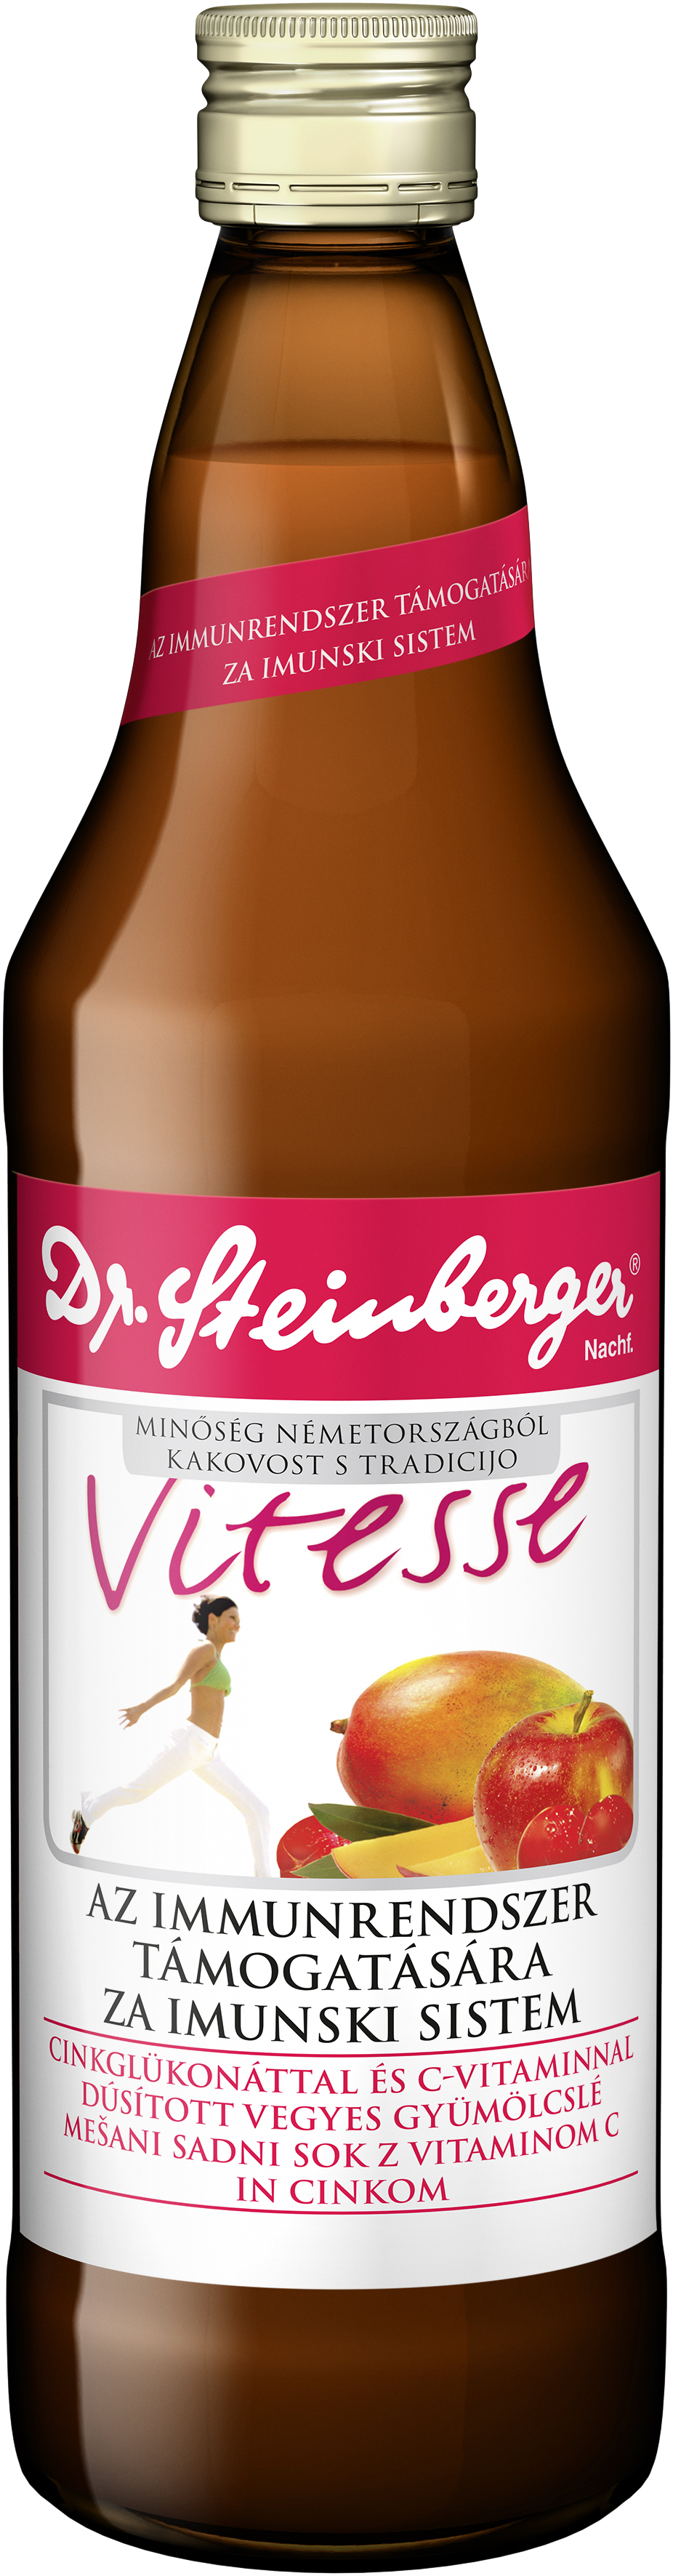 Dr.steinberger vitesse az immunrendszer támogatására 750 ml